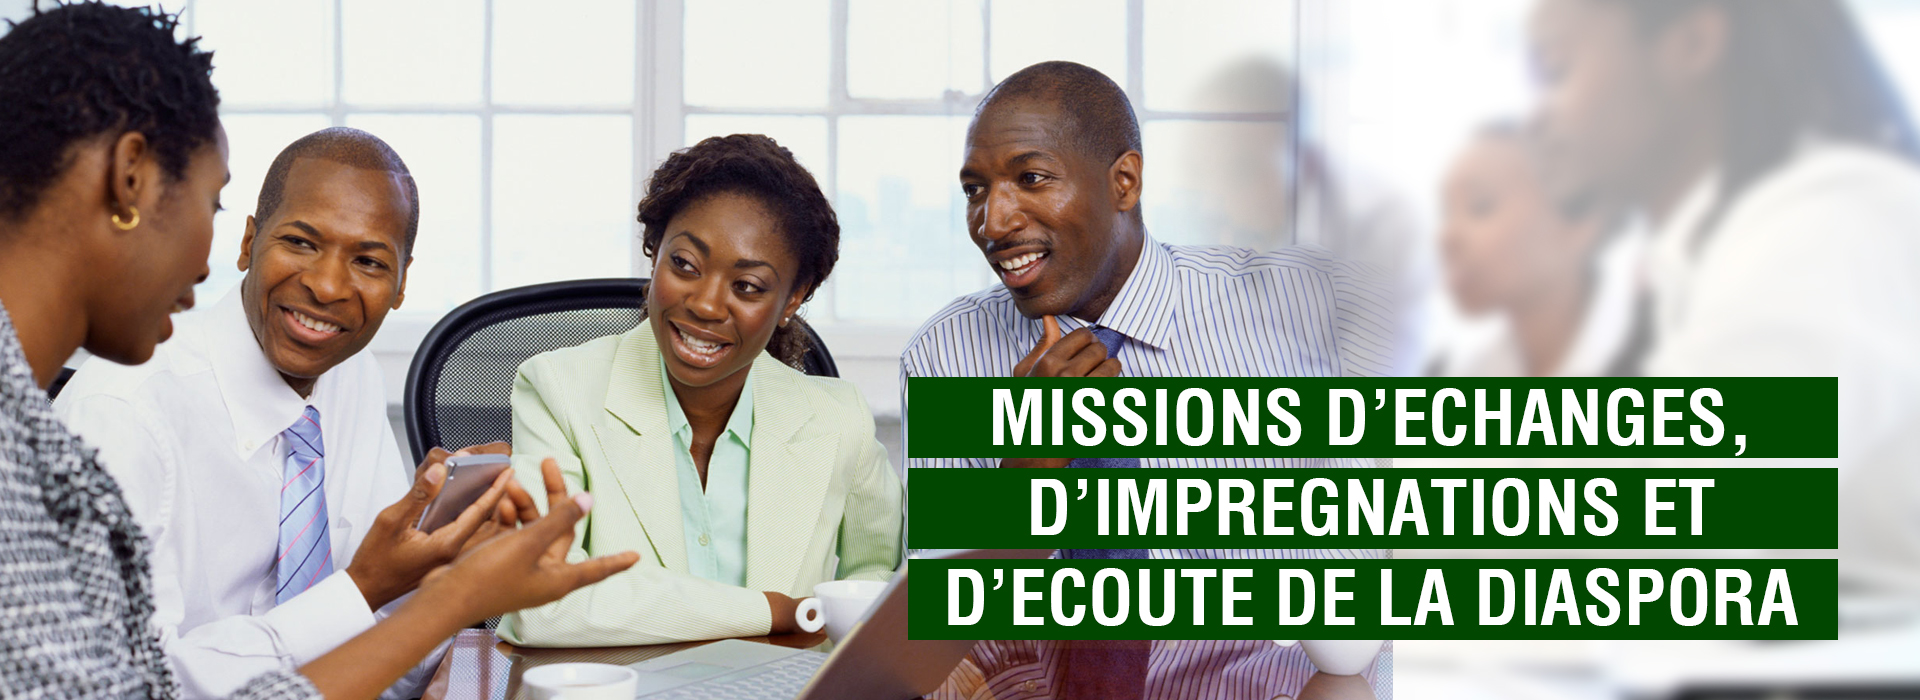 diaspora togolaise missions a